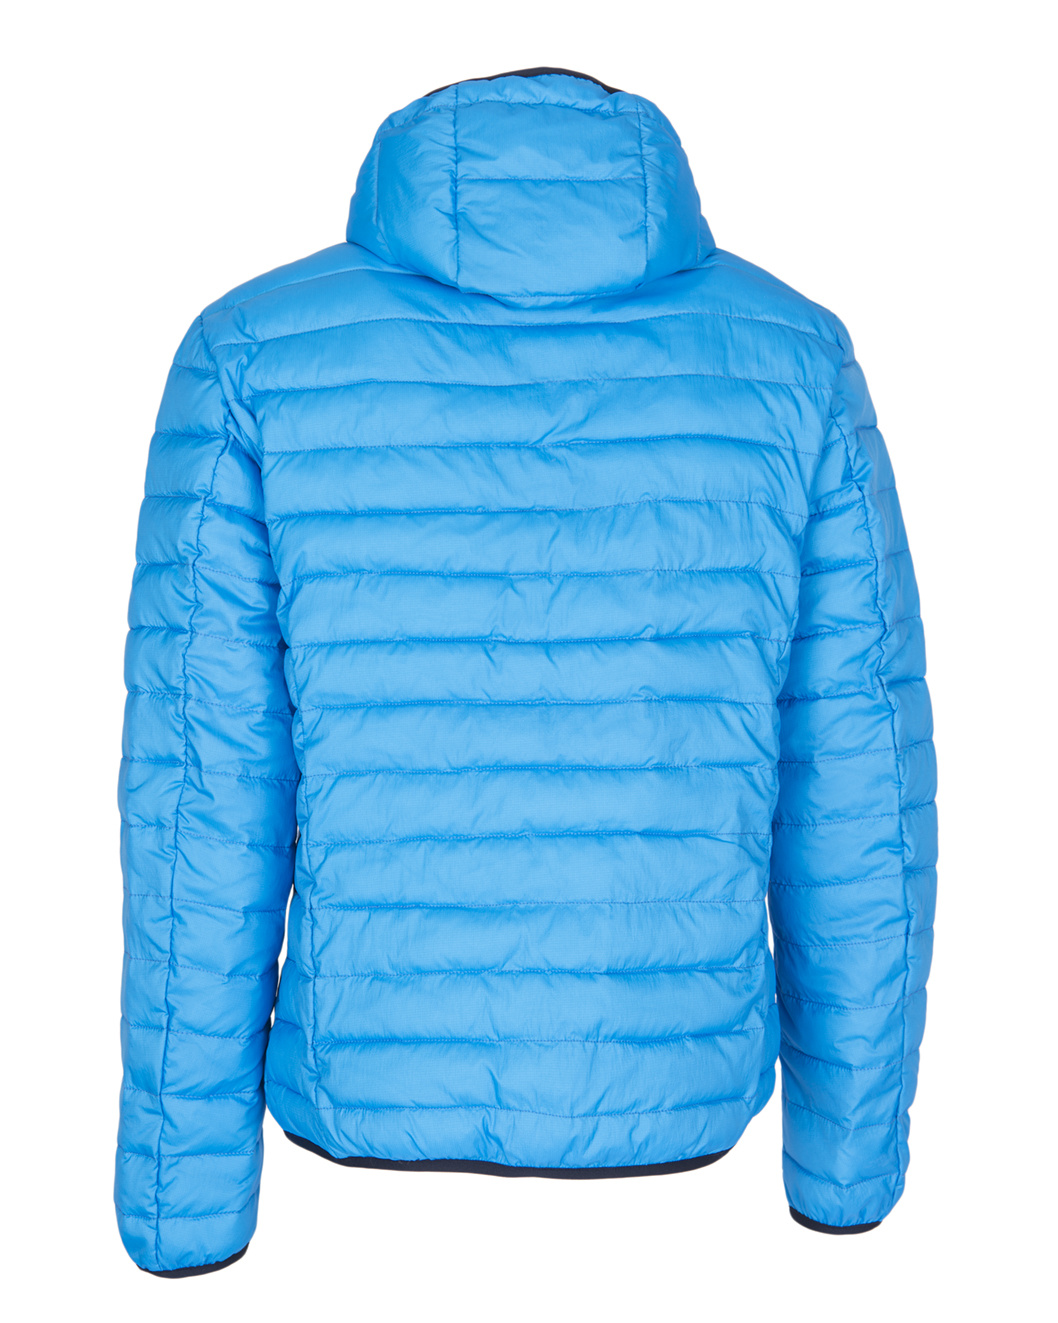 All weather lightweight Nautilus puffer jacket Dresden Blue